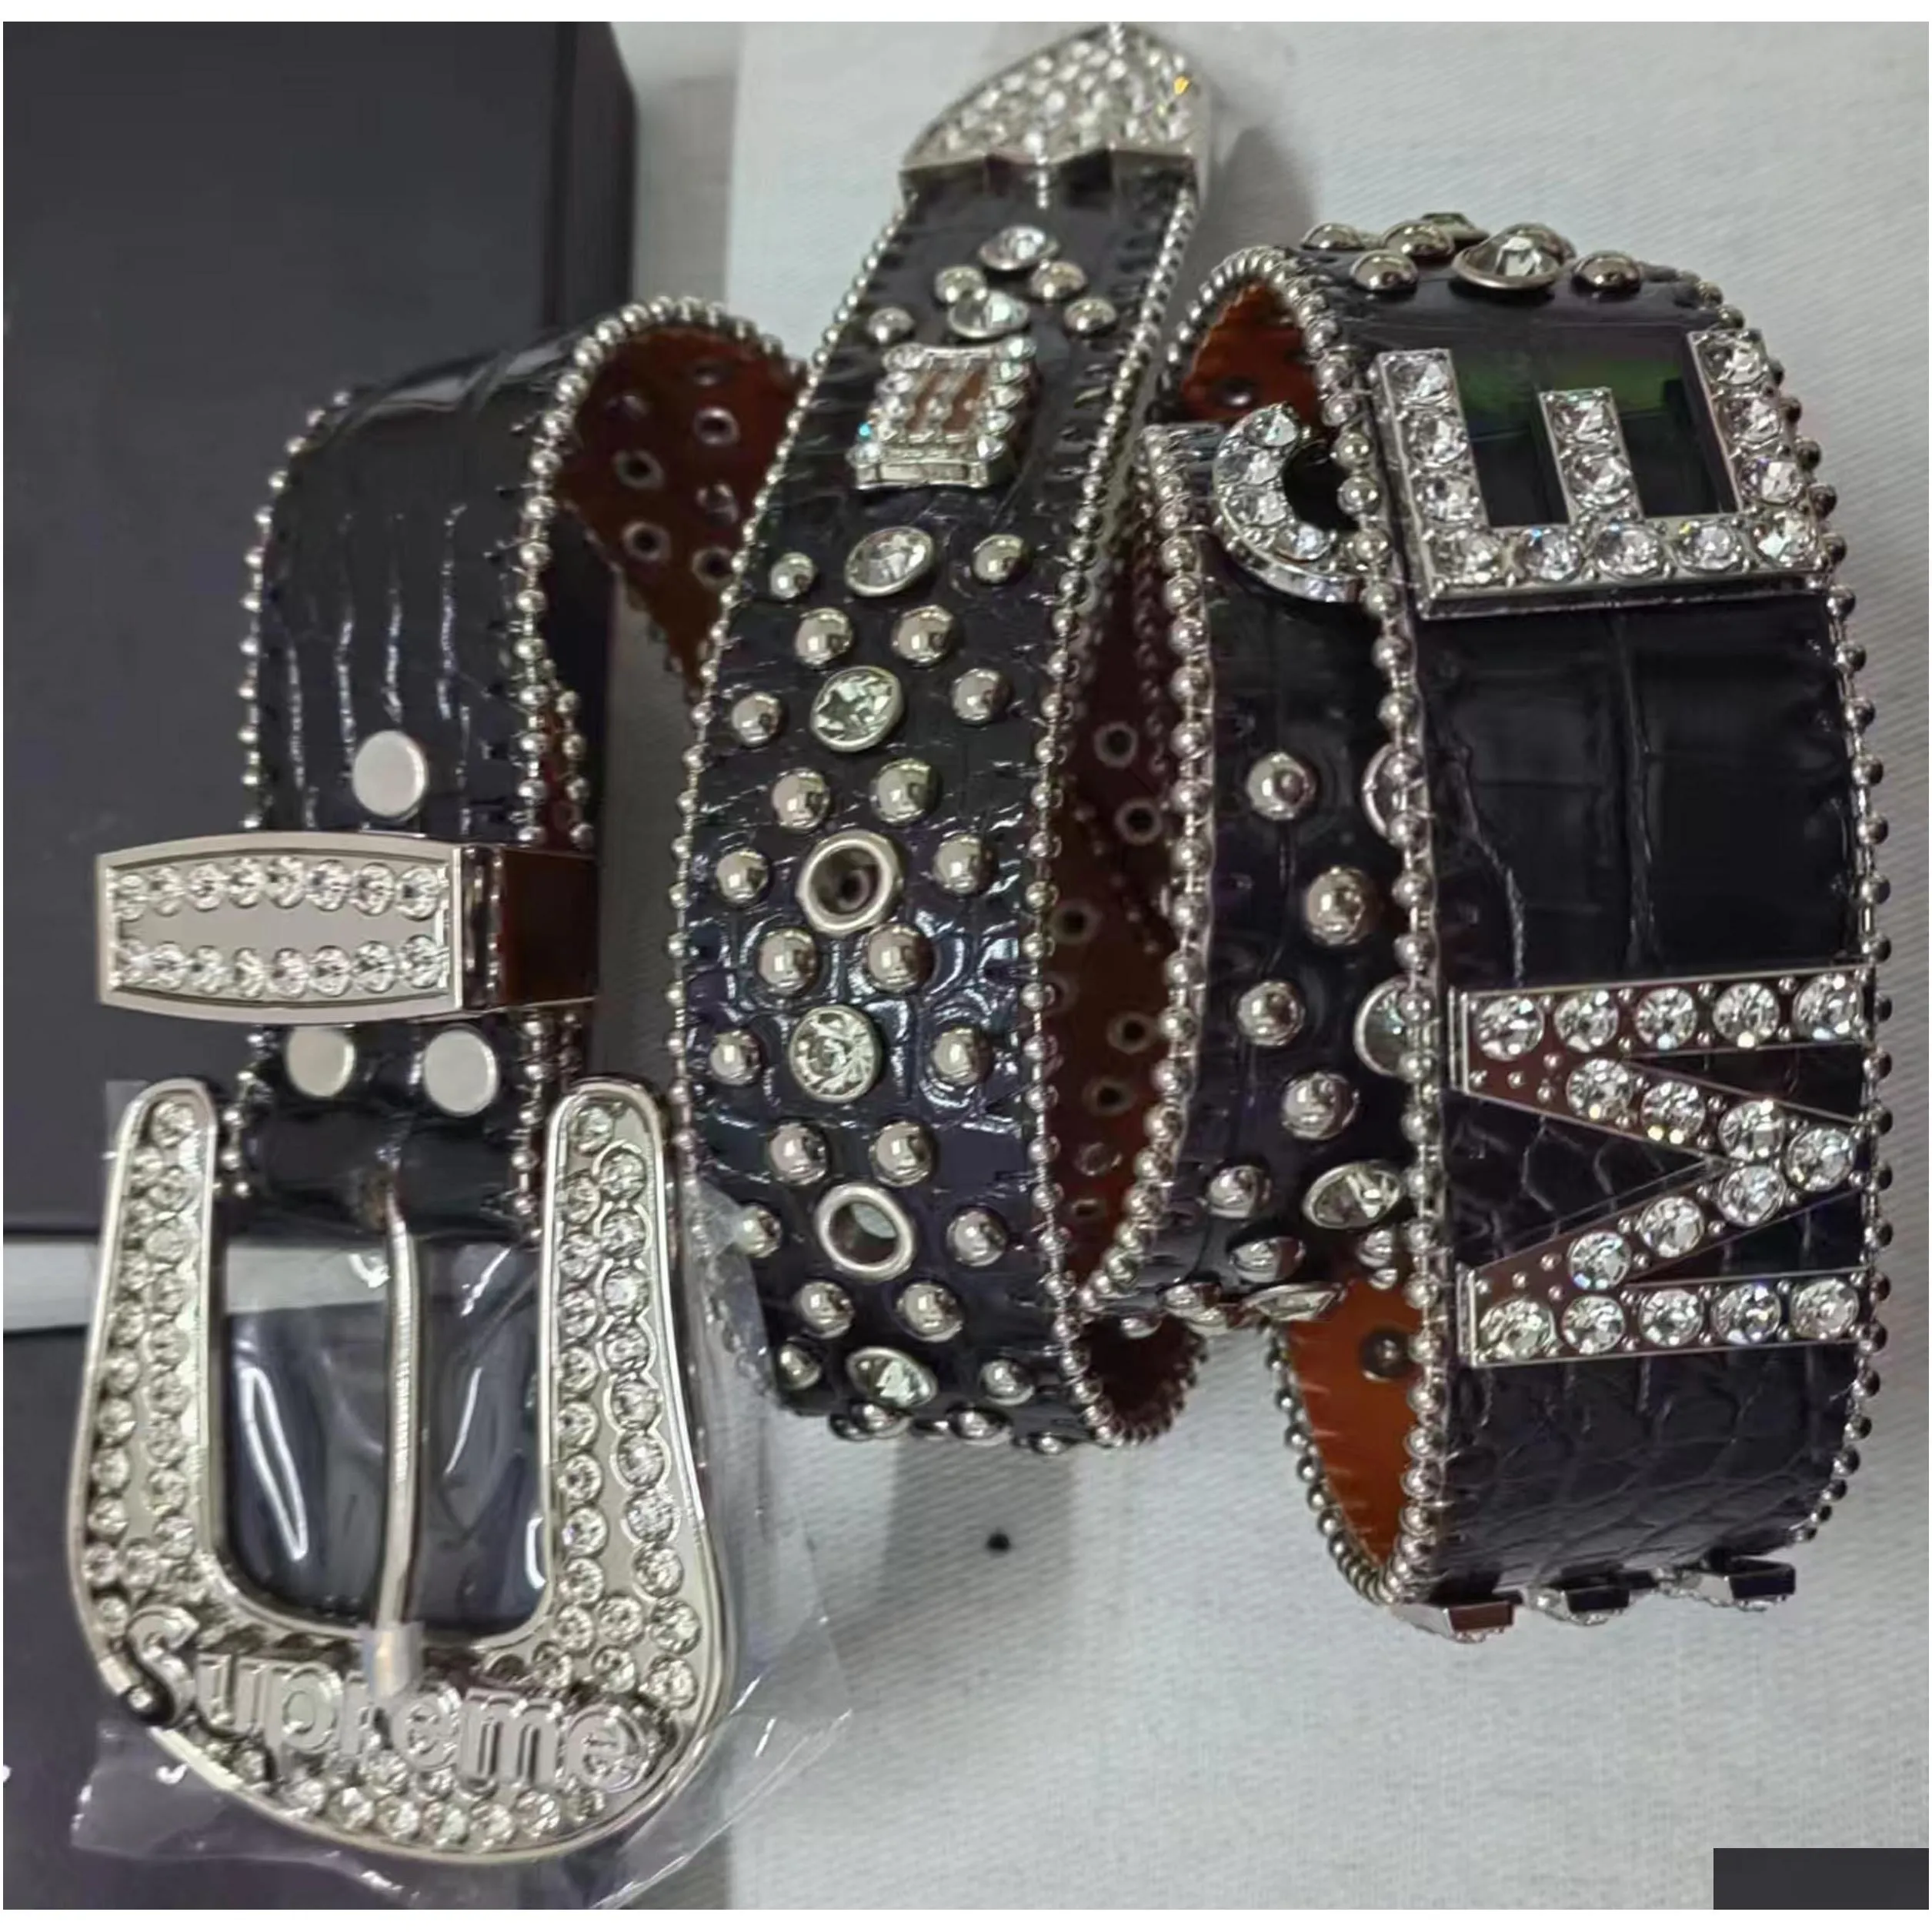 belts designer bb belt simon fashion for men women shiny diamond belt black on black blue white multicolour with bling rhinestones gift